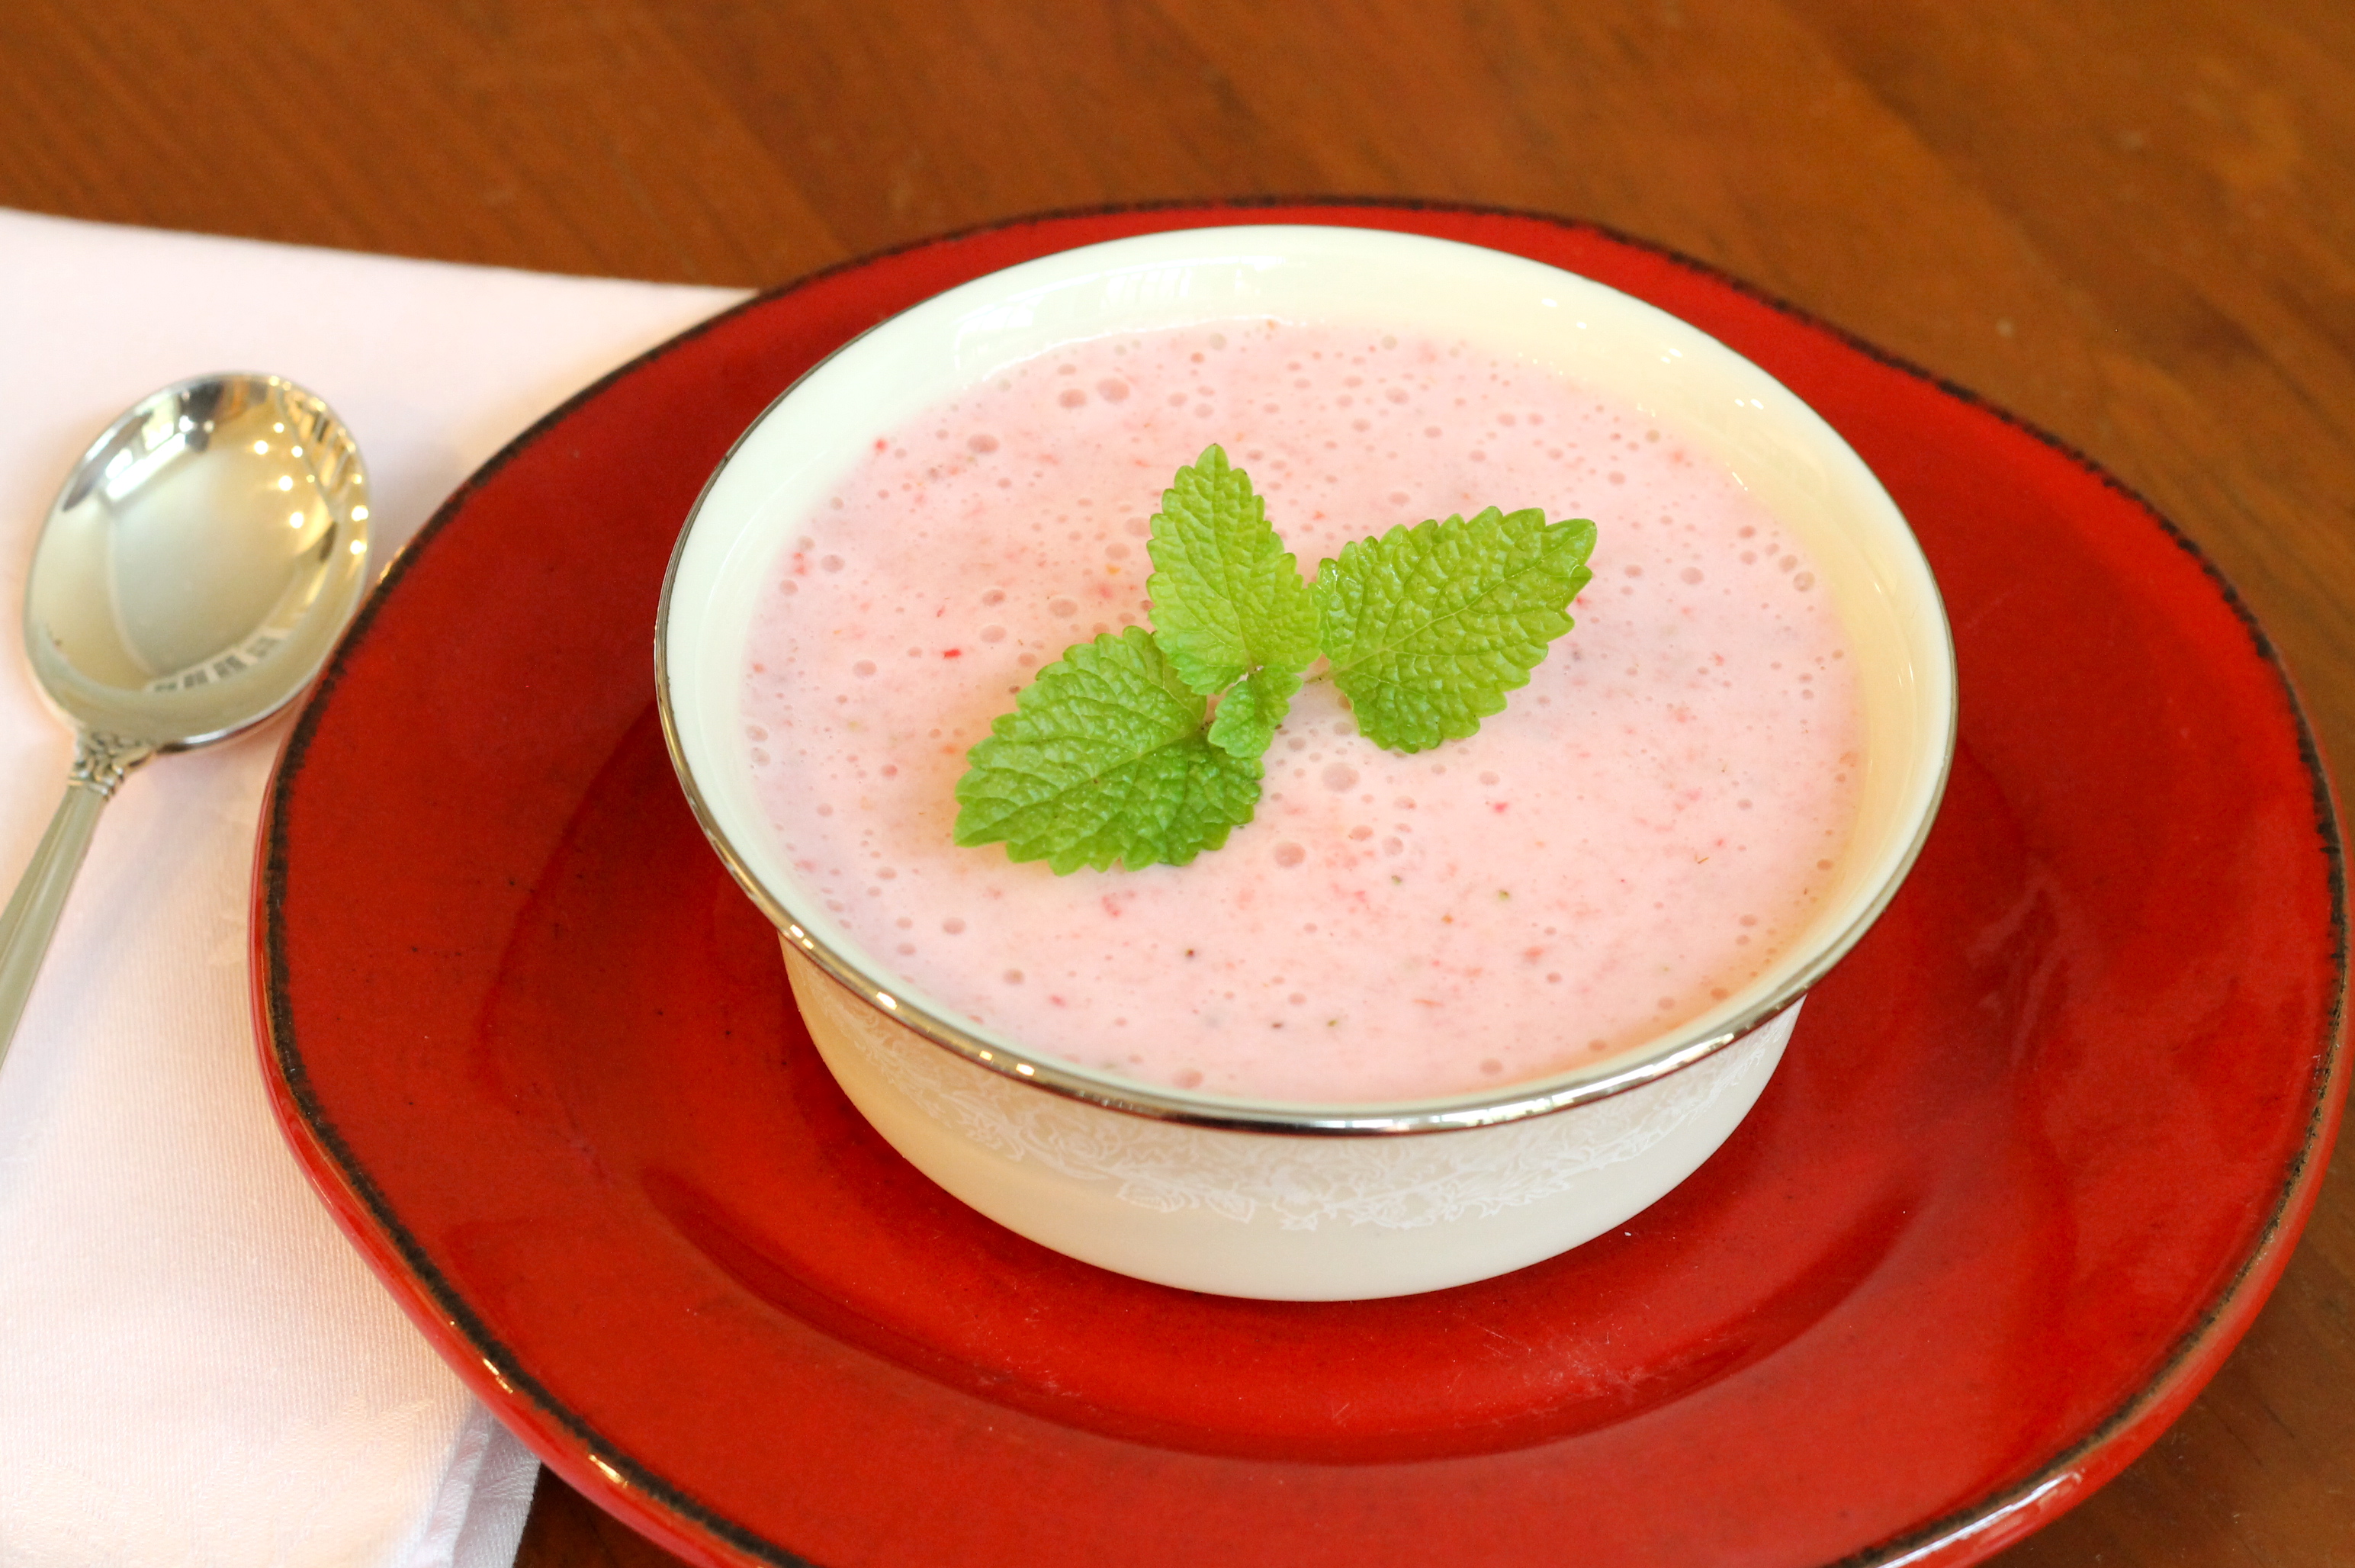 IMG 0825 - Strawberry Rhubarb Pie